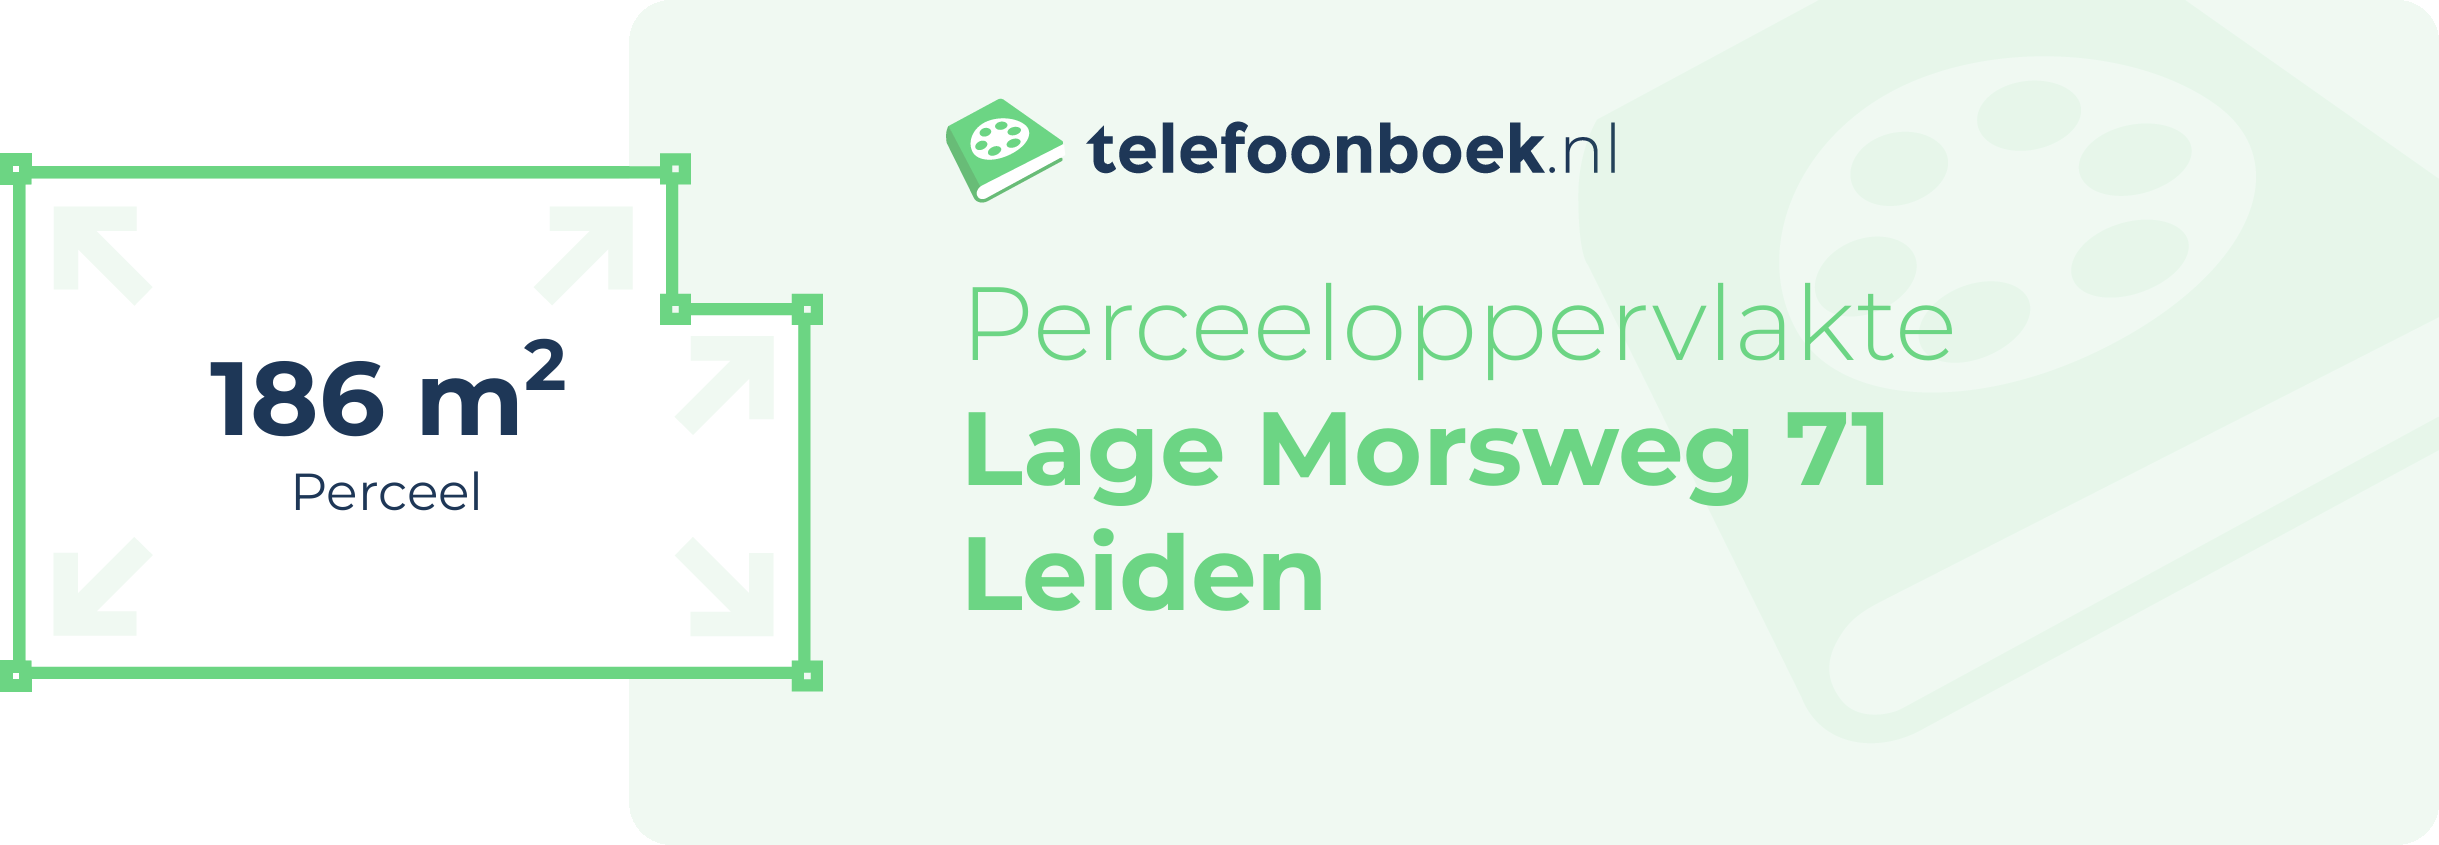 Perceeloppervlakte Lage Morsweg 71 Leiden